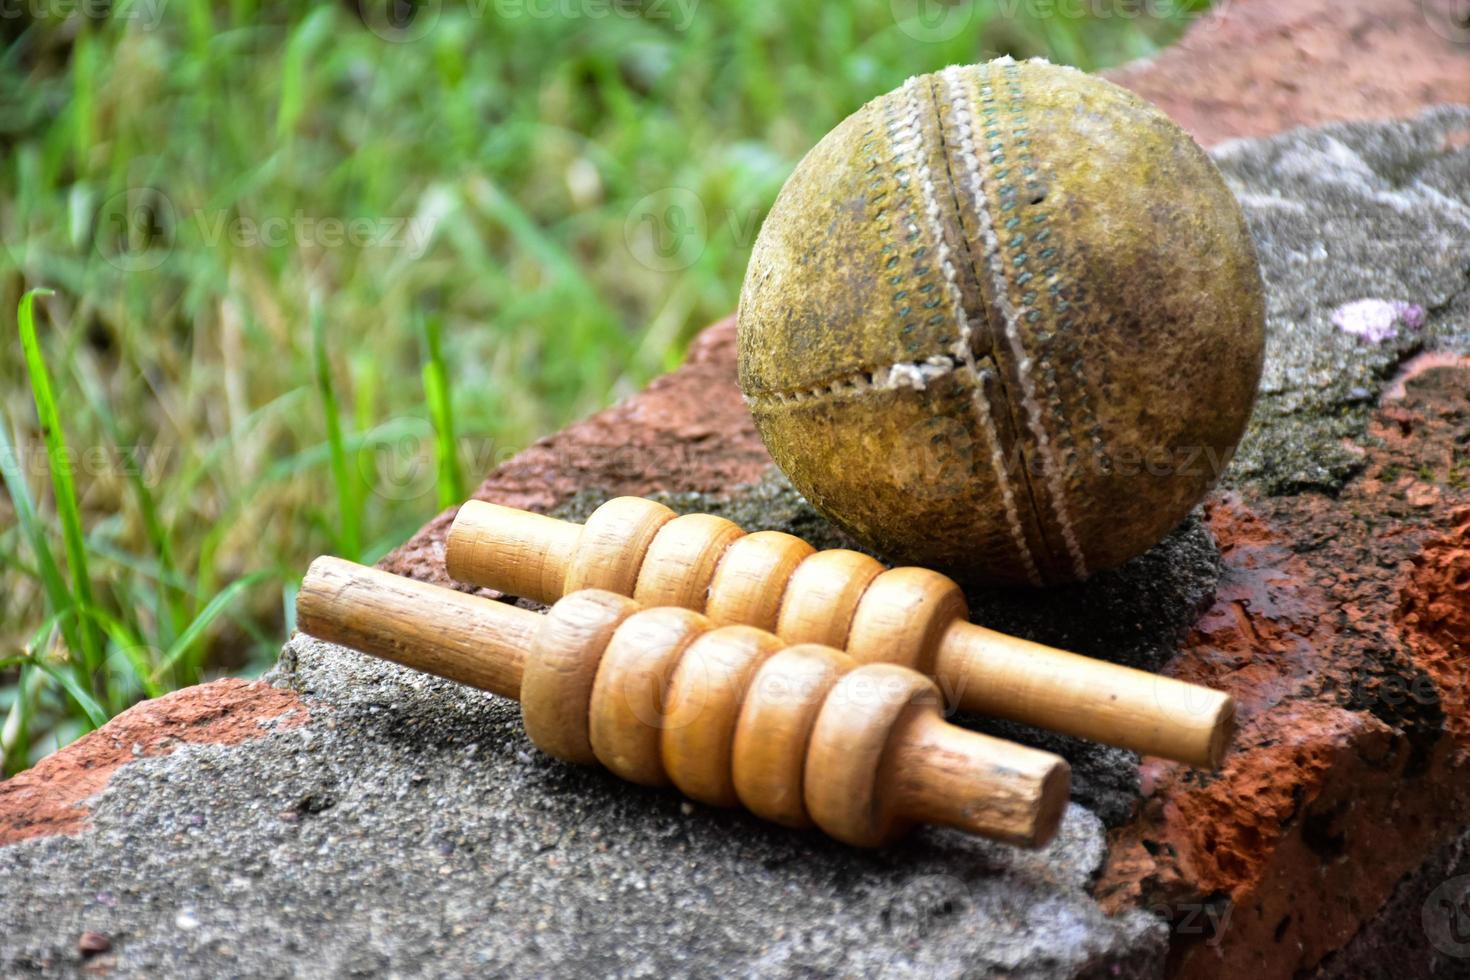 equipos deportivos de cricket en ladrillo, bate, wicket, pelota de cuero vieja, enfoque suave y selectivo. foto